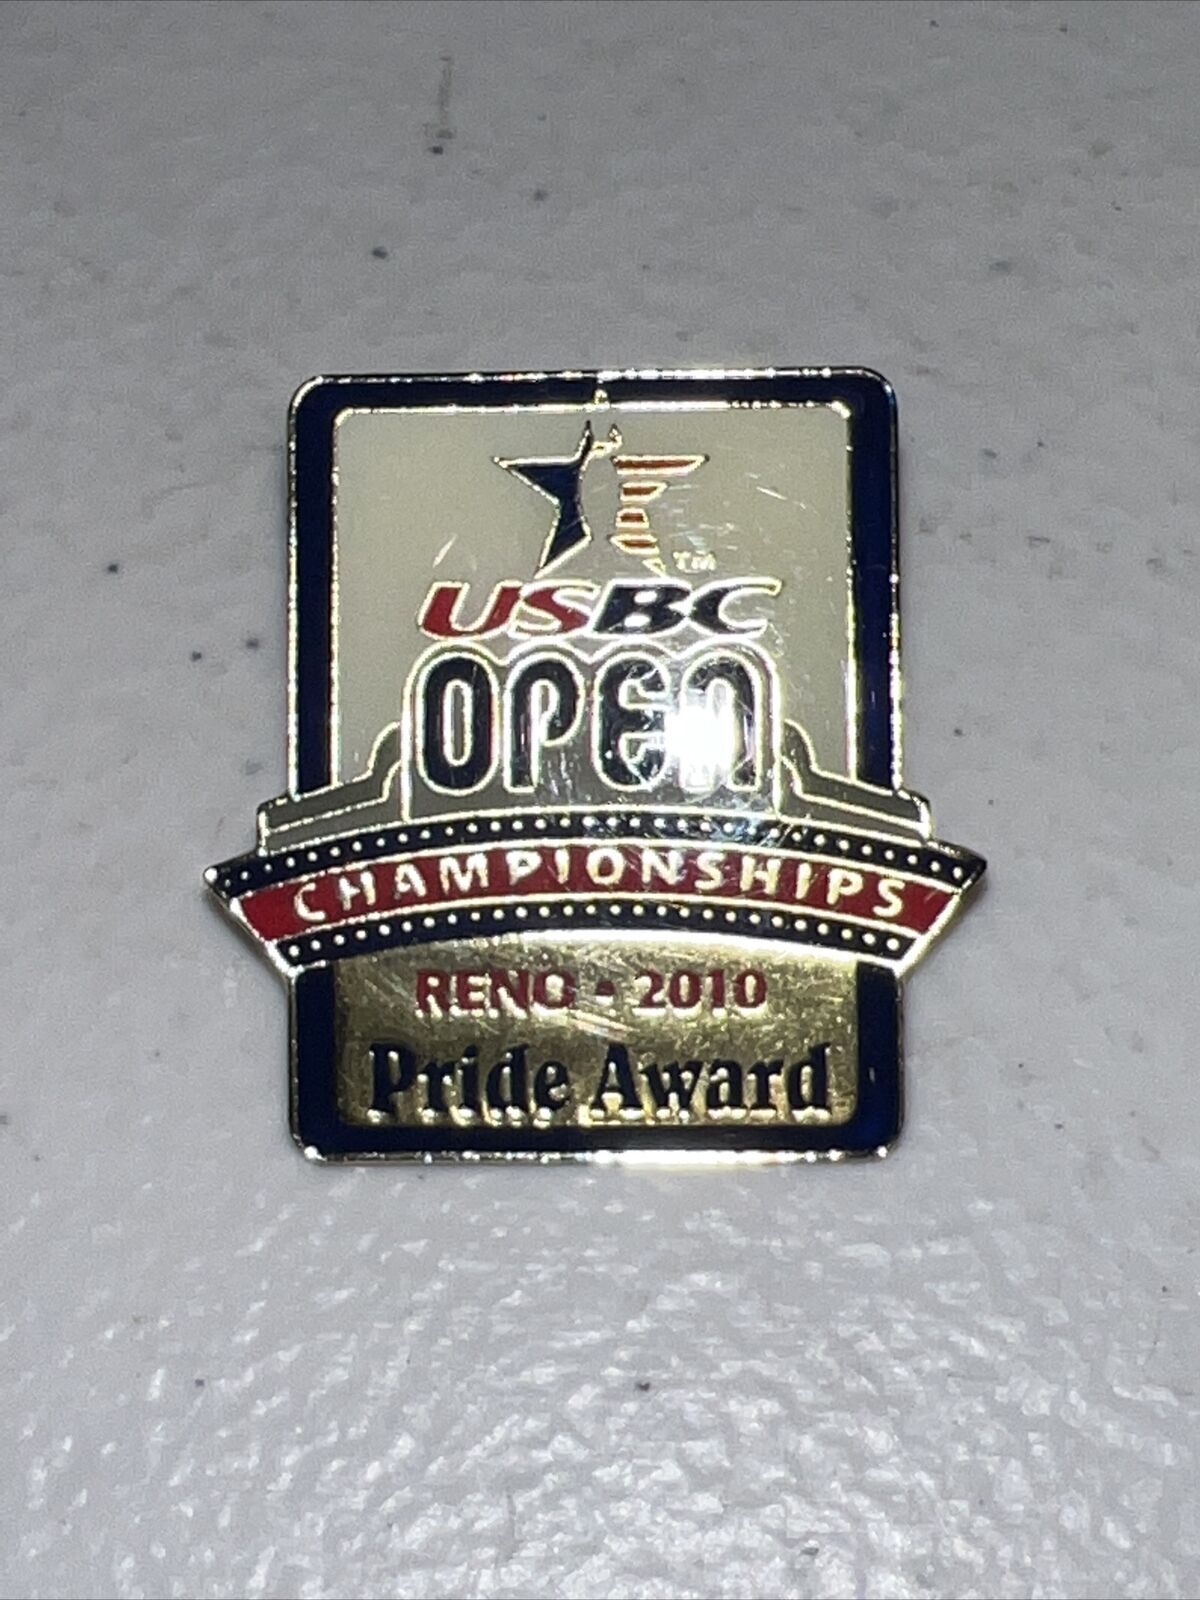 2010 usbc open championships reno pride award pin